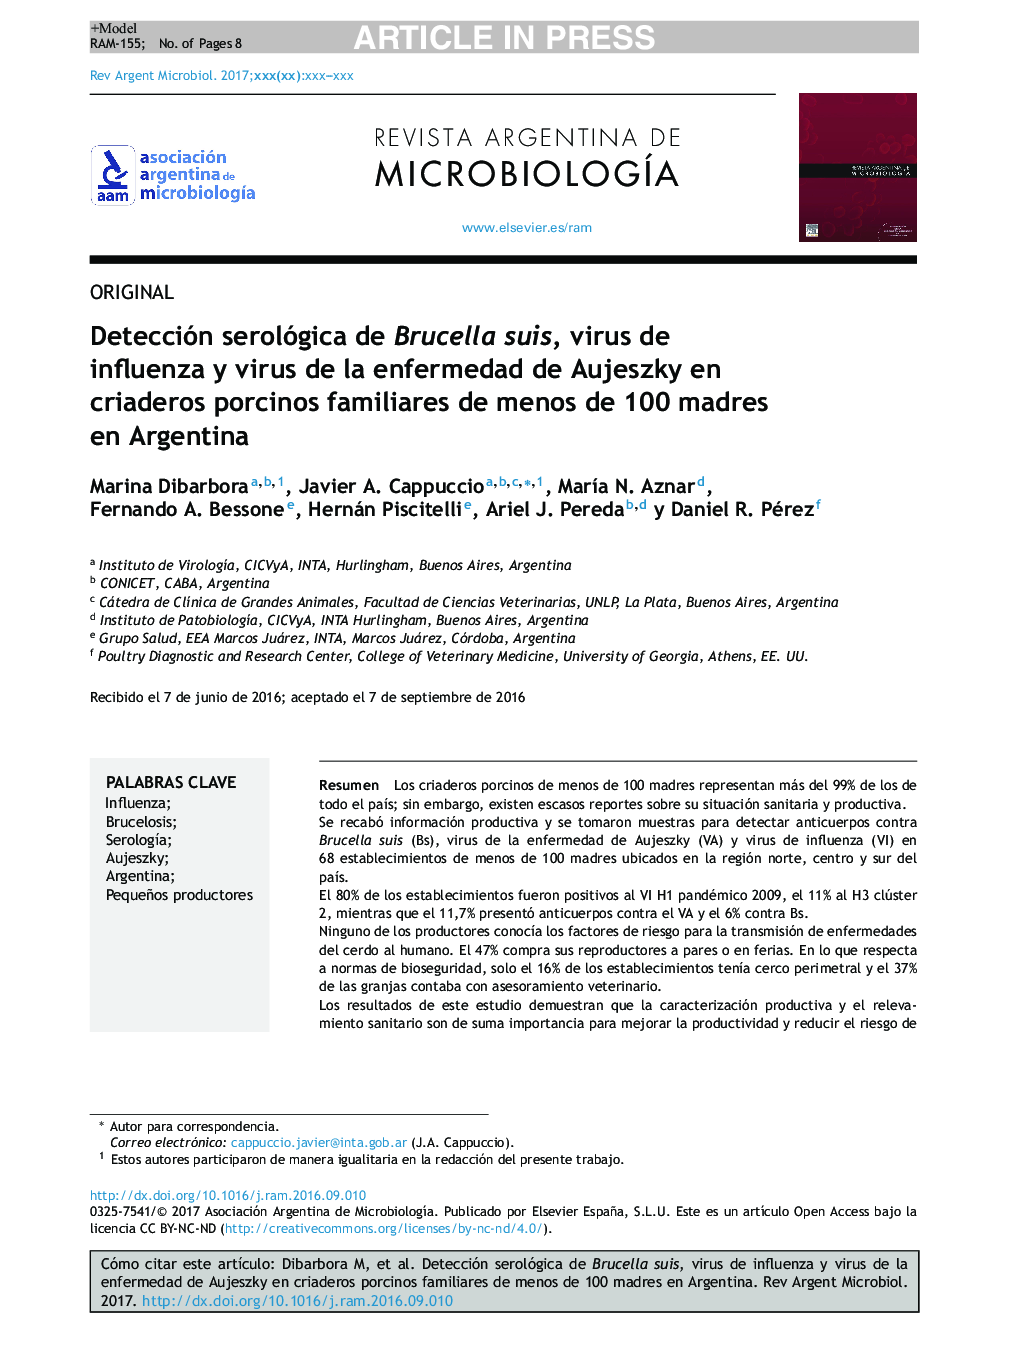 Detección serológica de Brucella suis, virus de influenza y virus de la enfermedad de Aujeszky en criaderos porcinos familiares de menos de 100 madres en Argentina